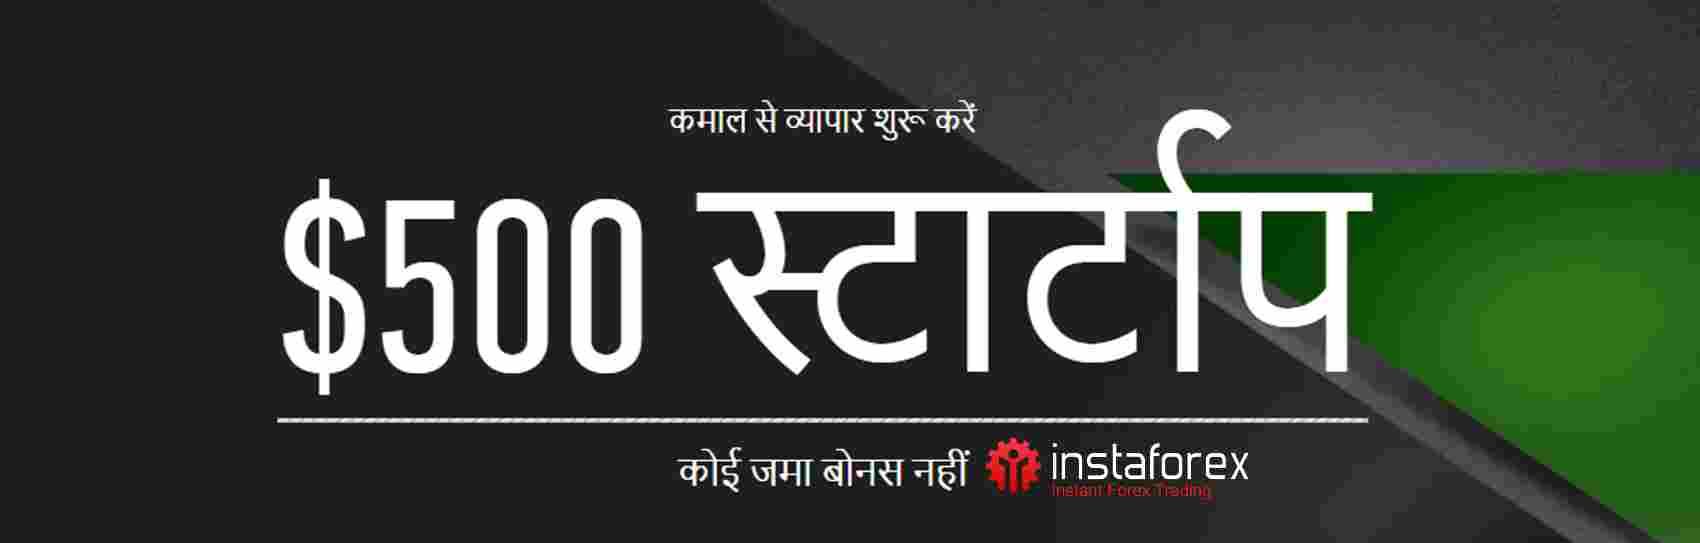 500 USD No Deposit Bonus in India – InstaForex